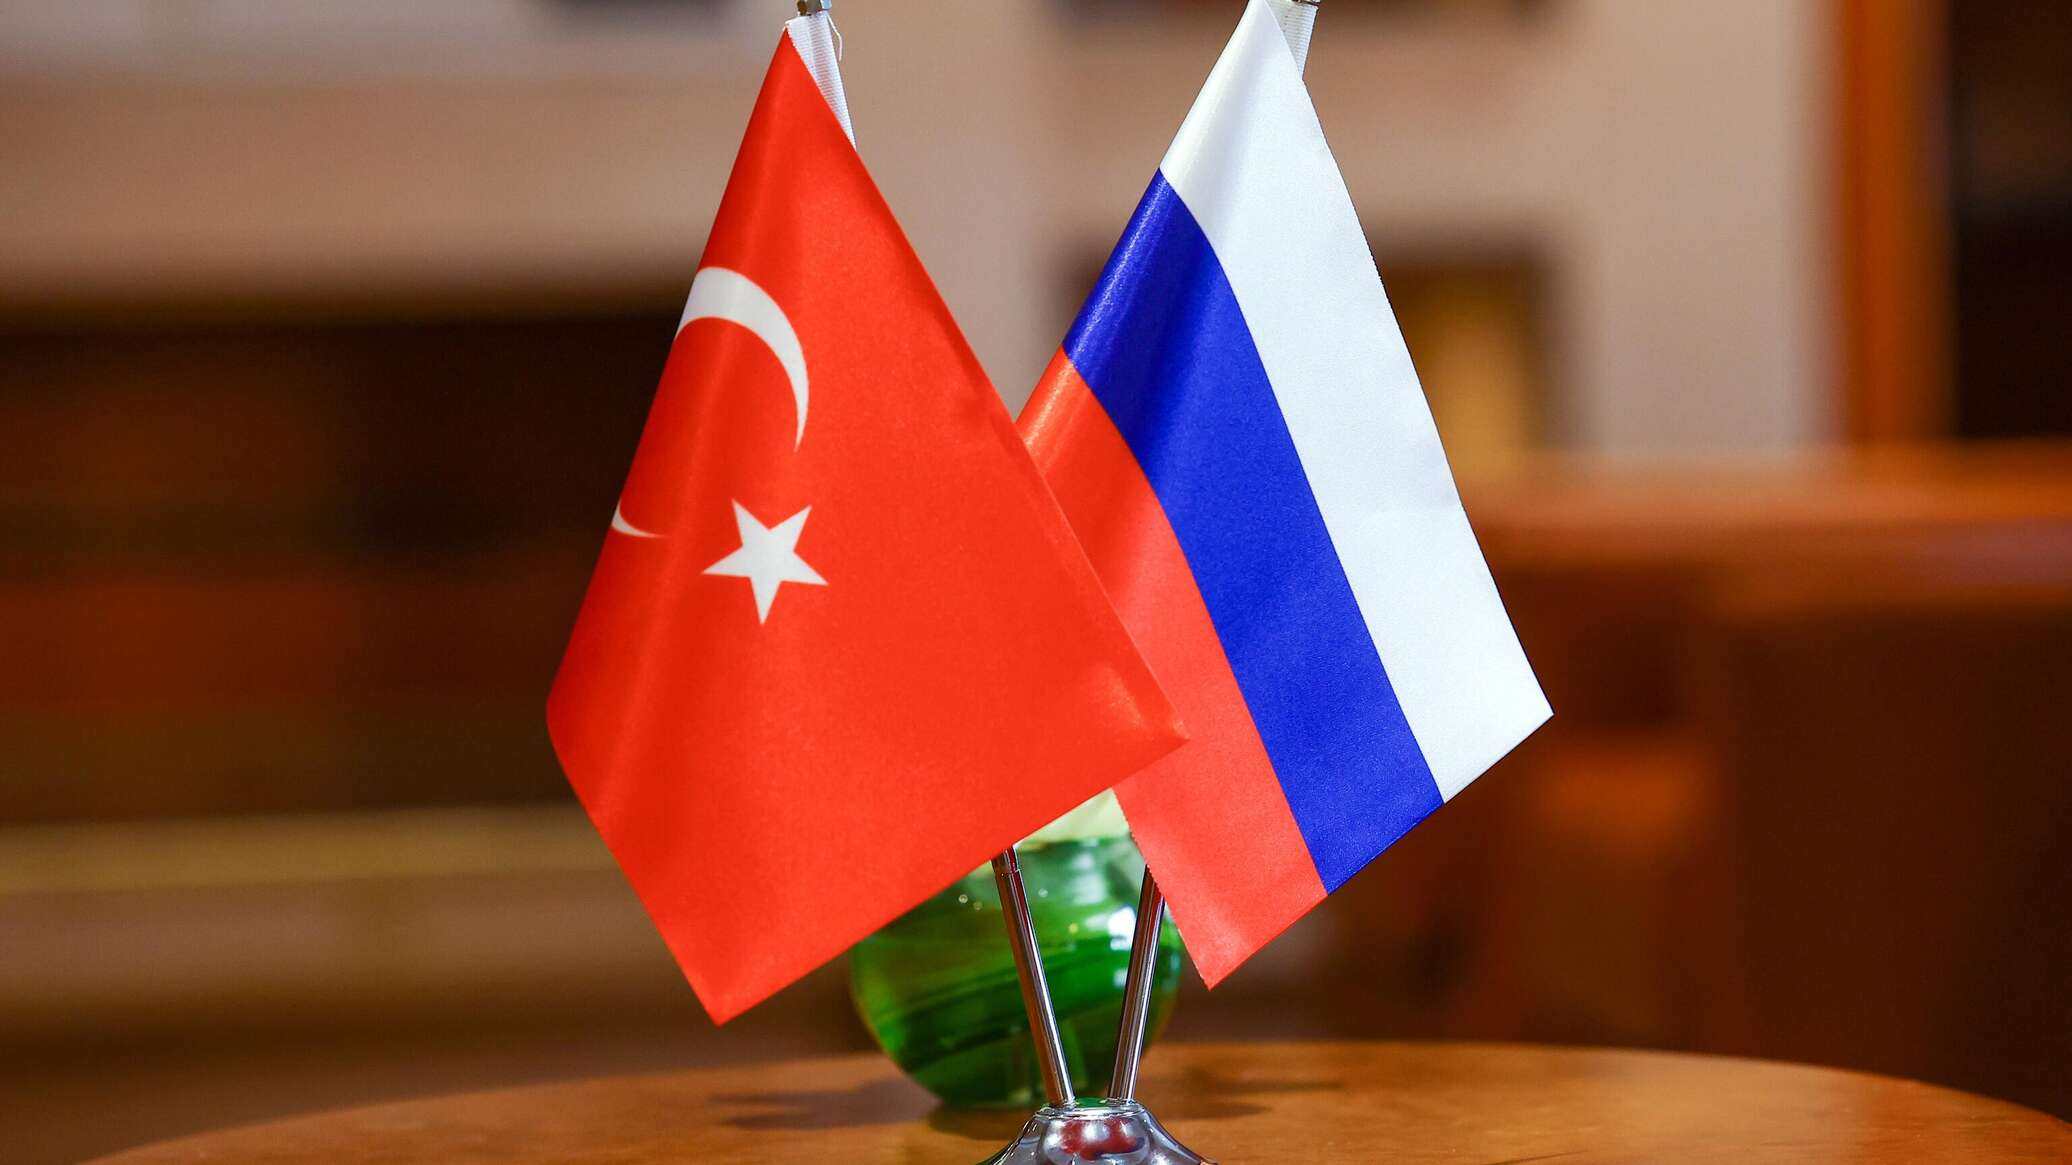 وفد تركي يزور سان بطرسبورغ الروسية في ديسمبر لمناقشة مشروع "مركز الغاز"